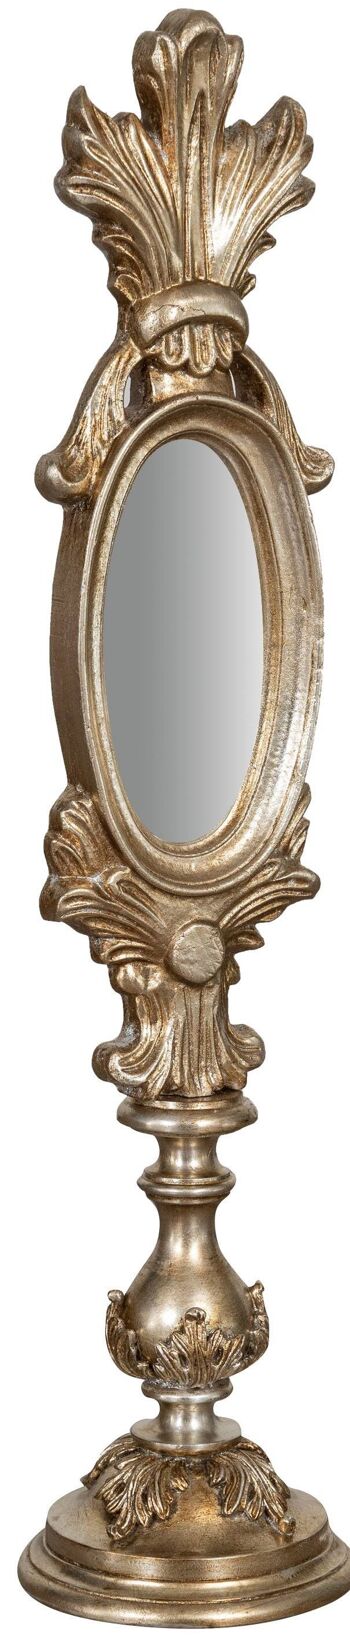 Miroir sur pied en bois avec finition feuille Arg L7595-A 1